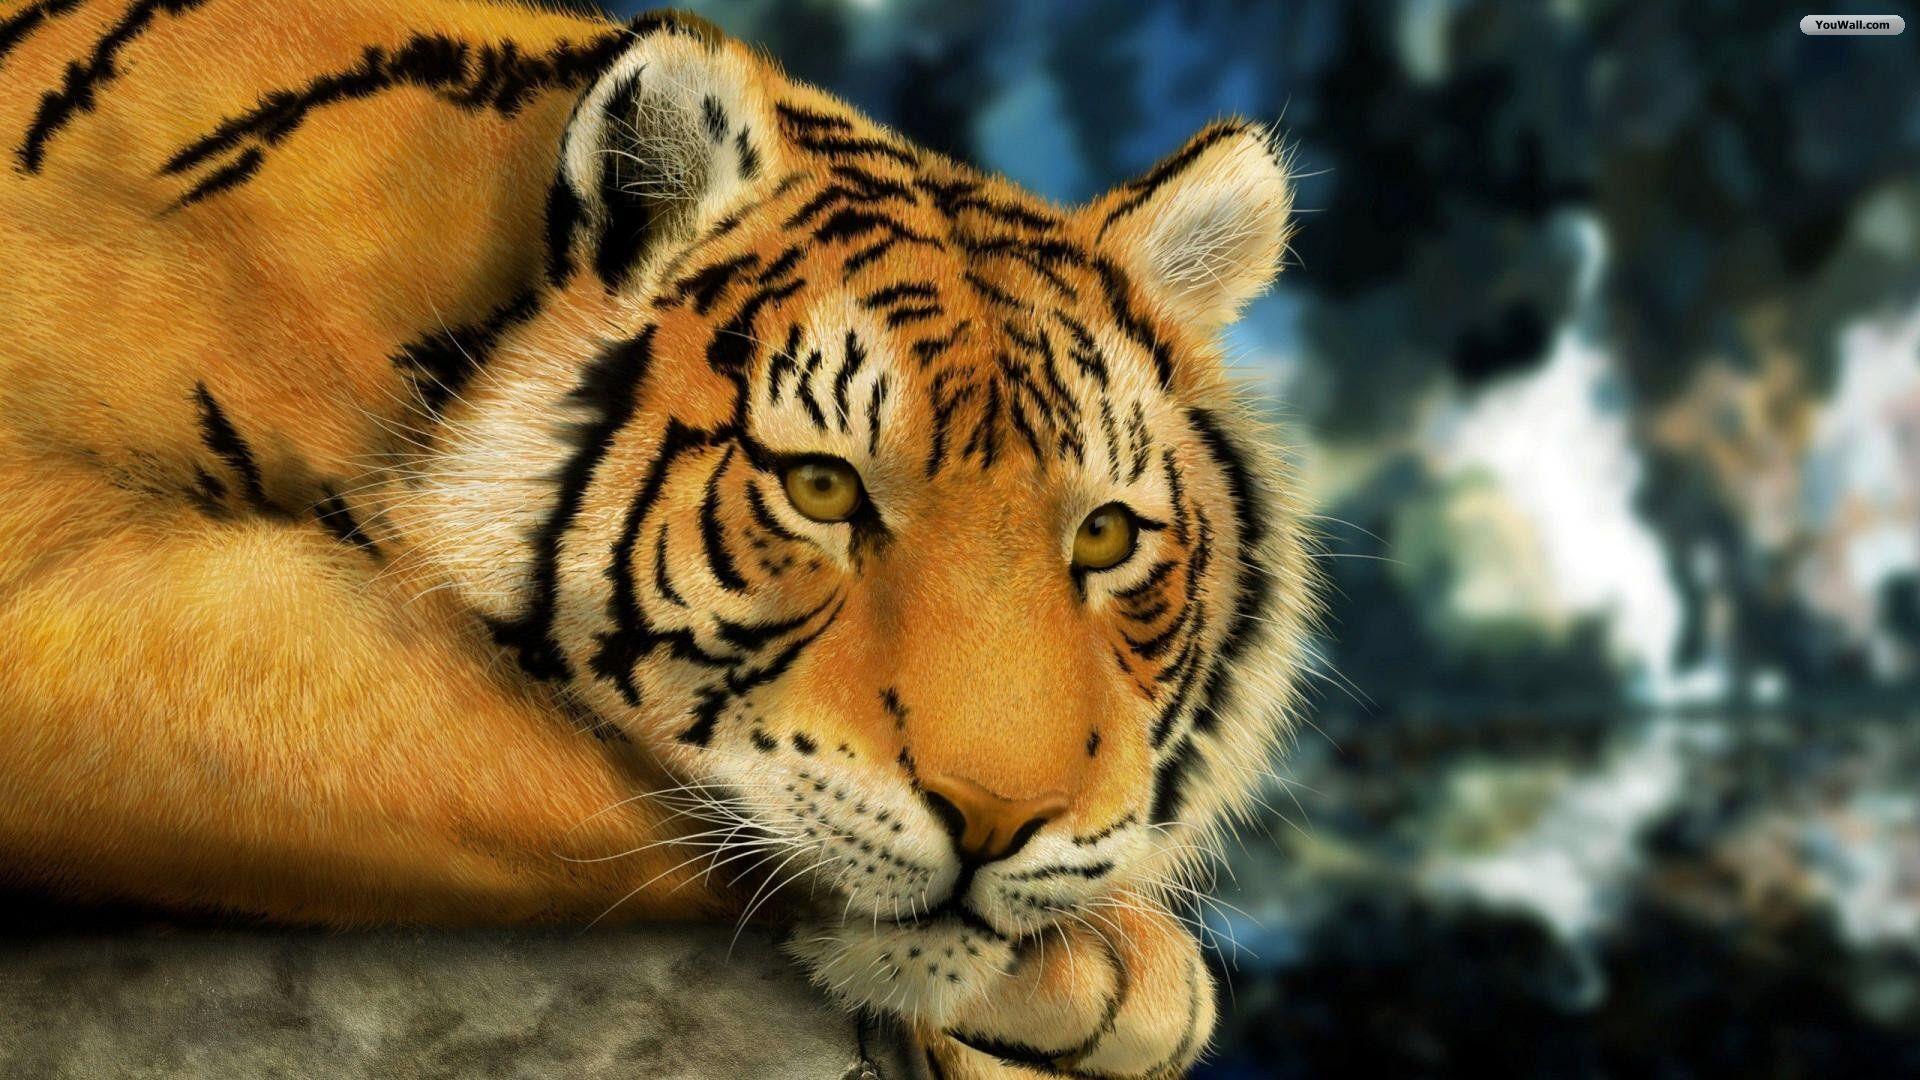 Bengal Tiger Siberian Tiger Tiger Live Wallpaper - download